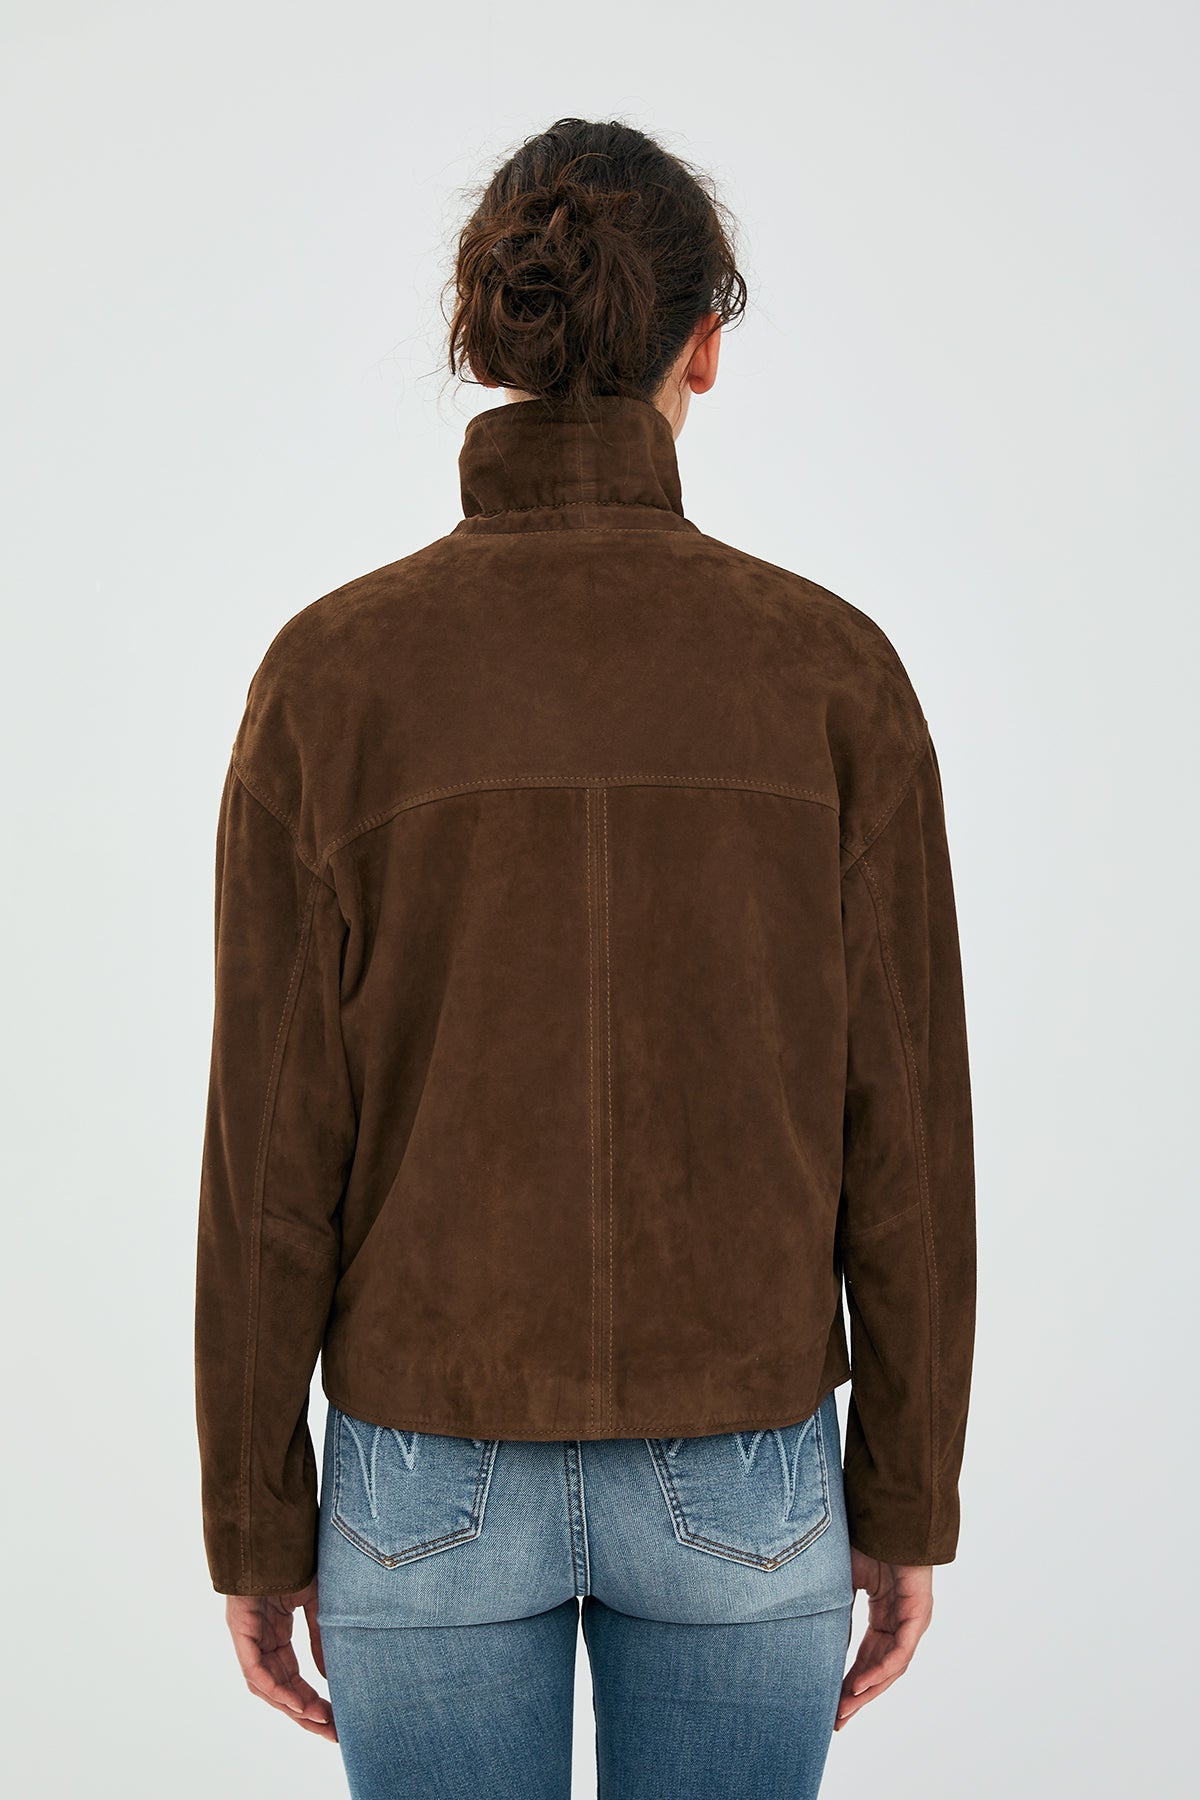 Nova Women's Brown Suede Leather Coat